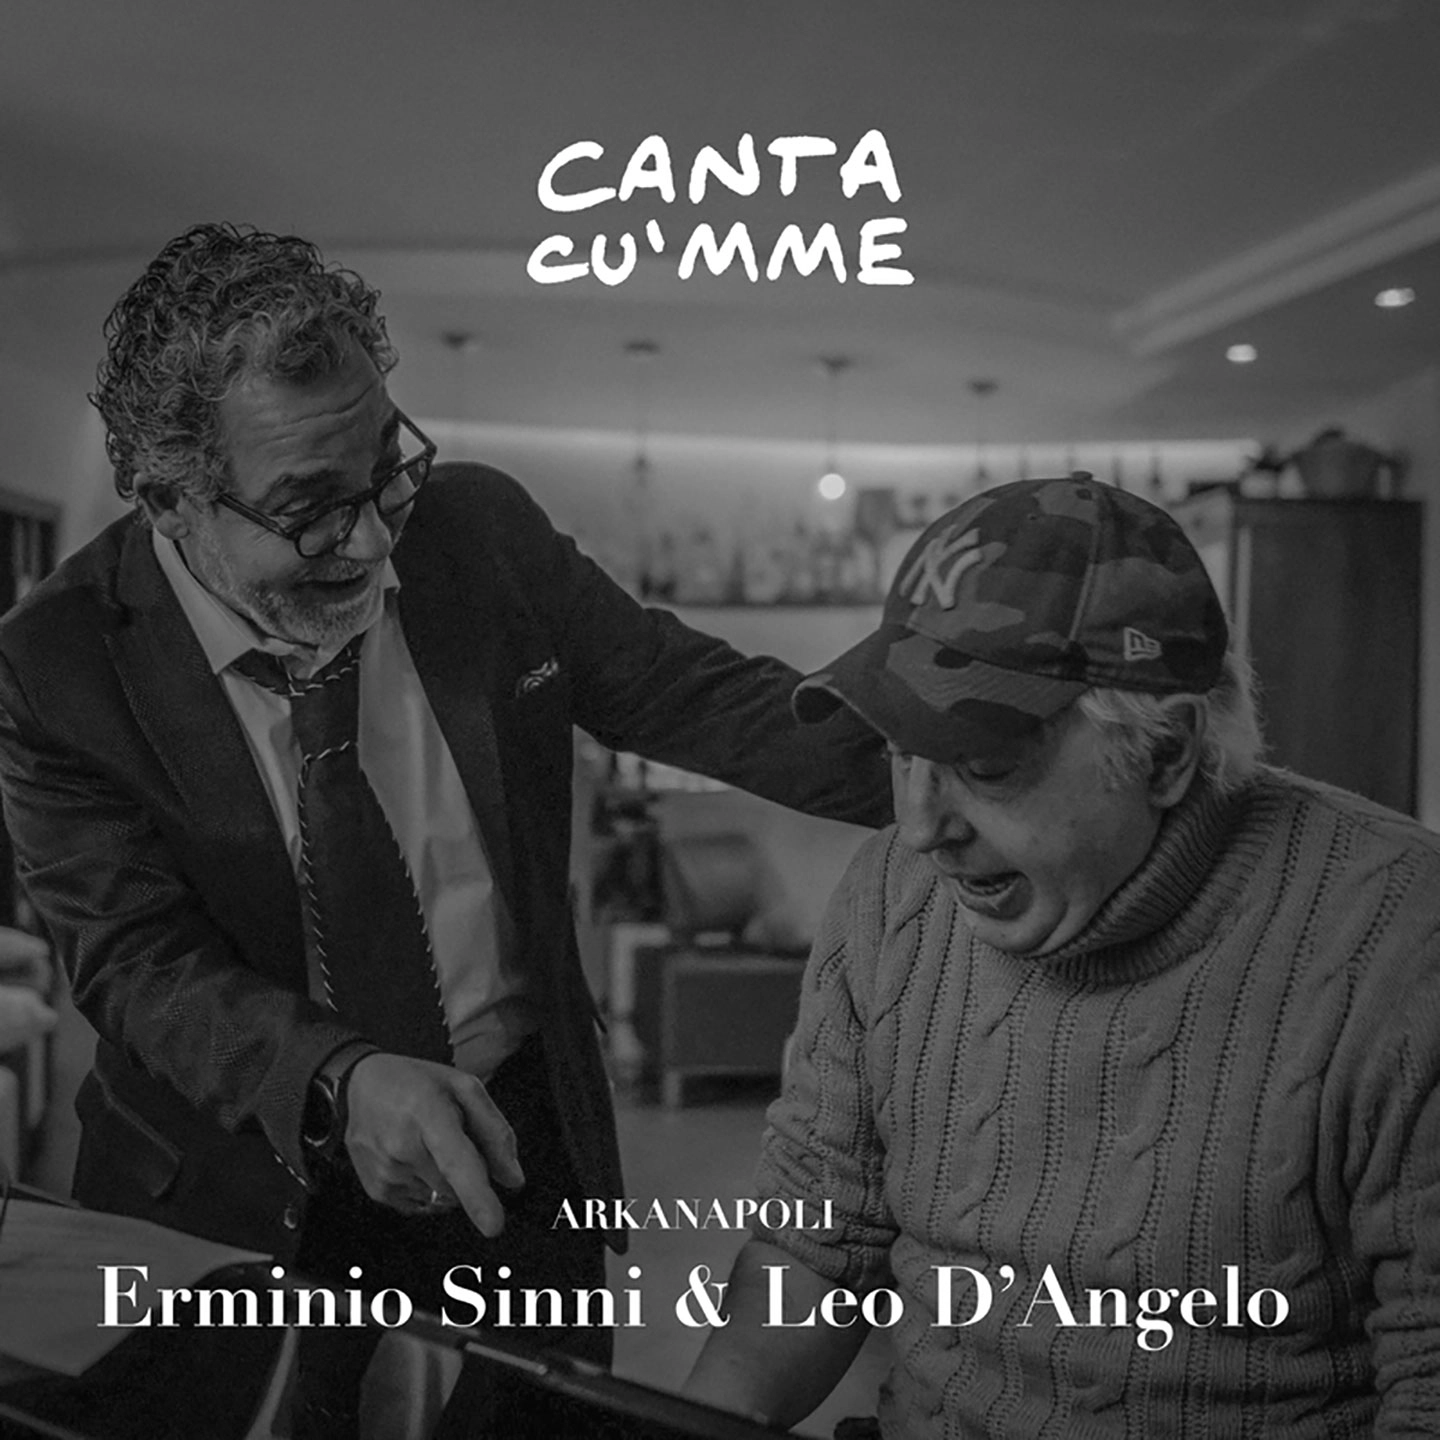 Foto 2 - Online il video di “Canta cu’mme”, il nuovo singolo di Erminio Sinni & Leo D’Angelo